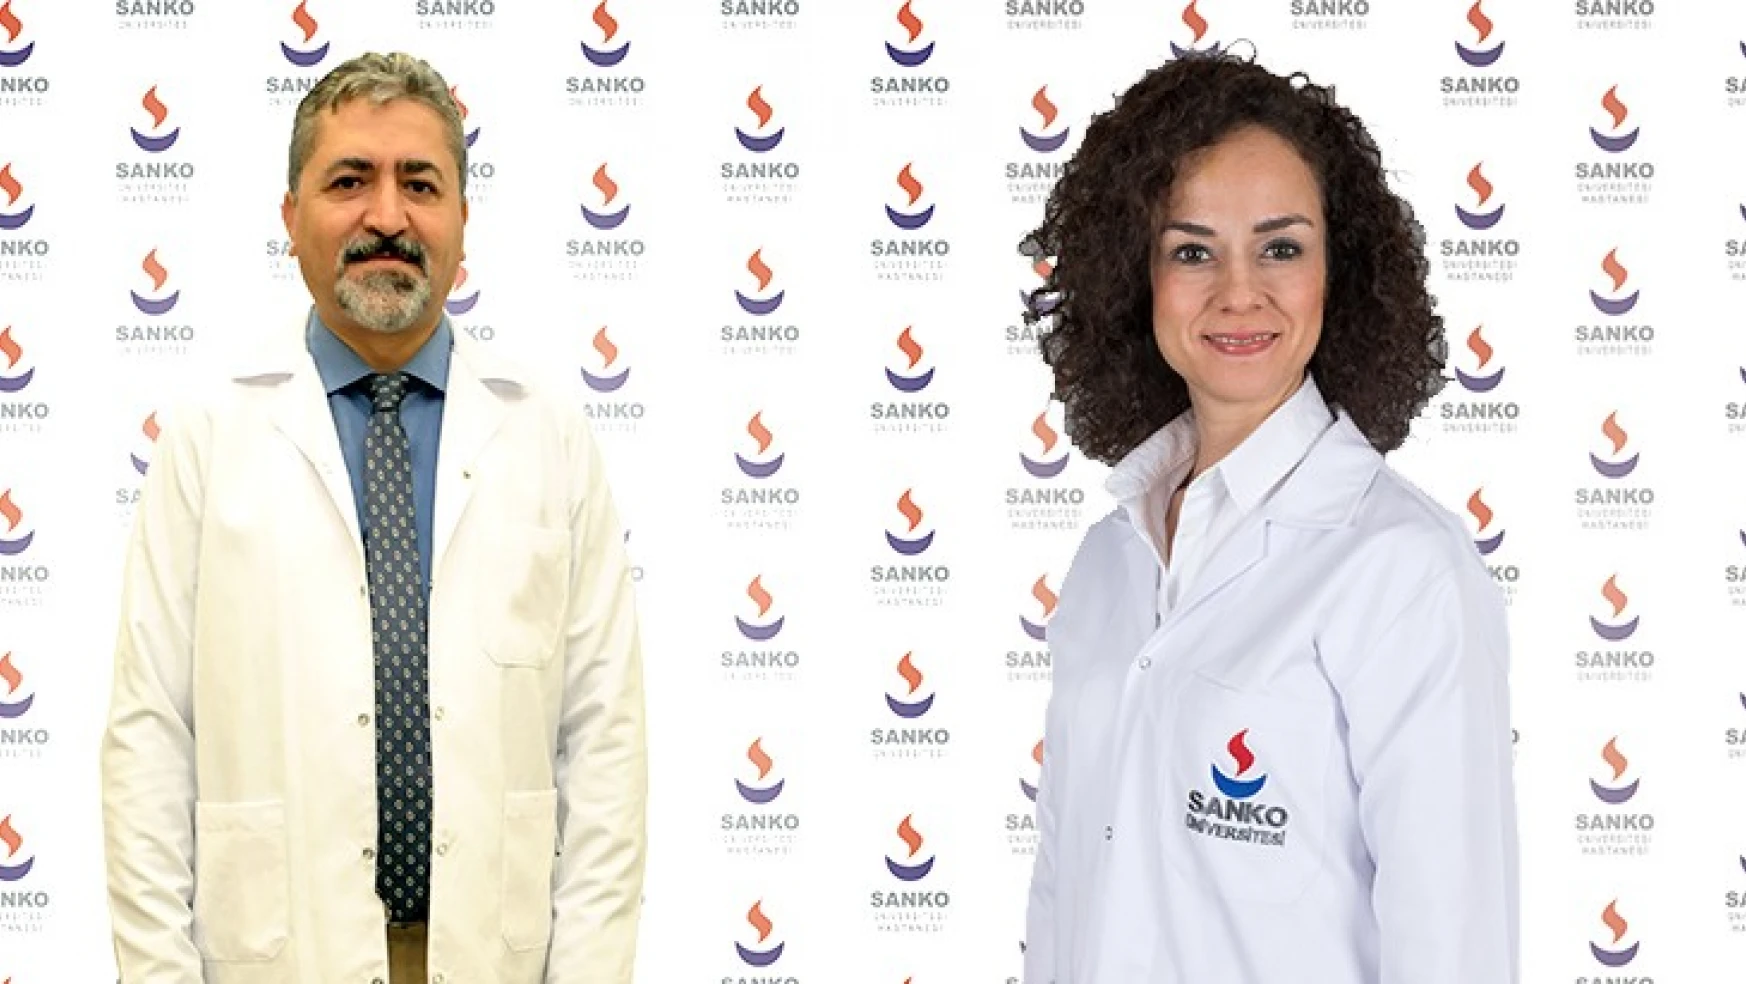 Dr. Öğretim Üyeleri Pala ve Kazımoğlu 'Doçent' unvanı aldı